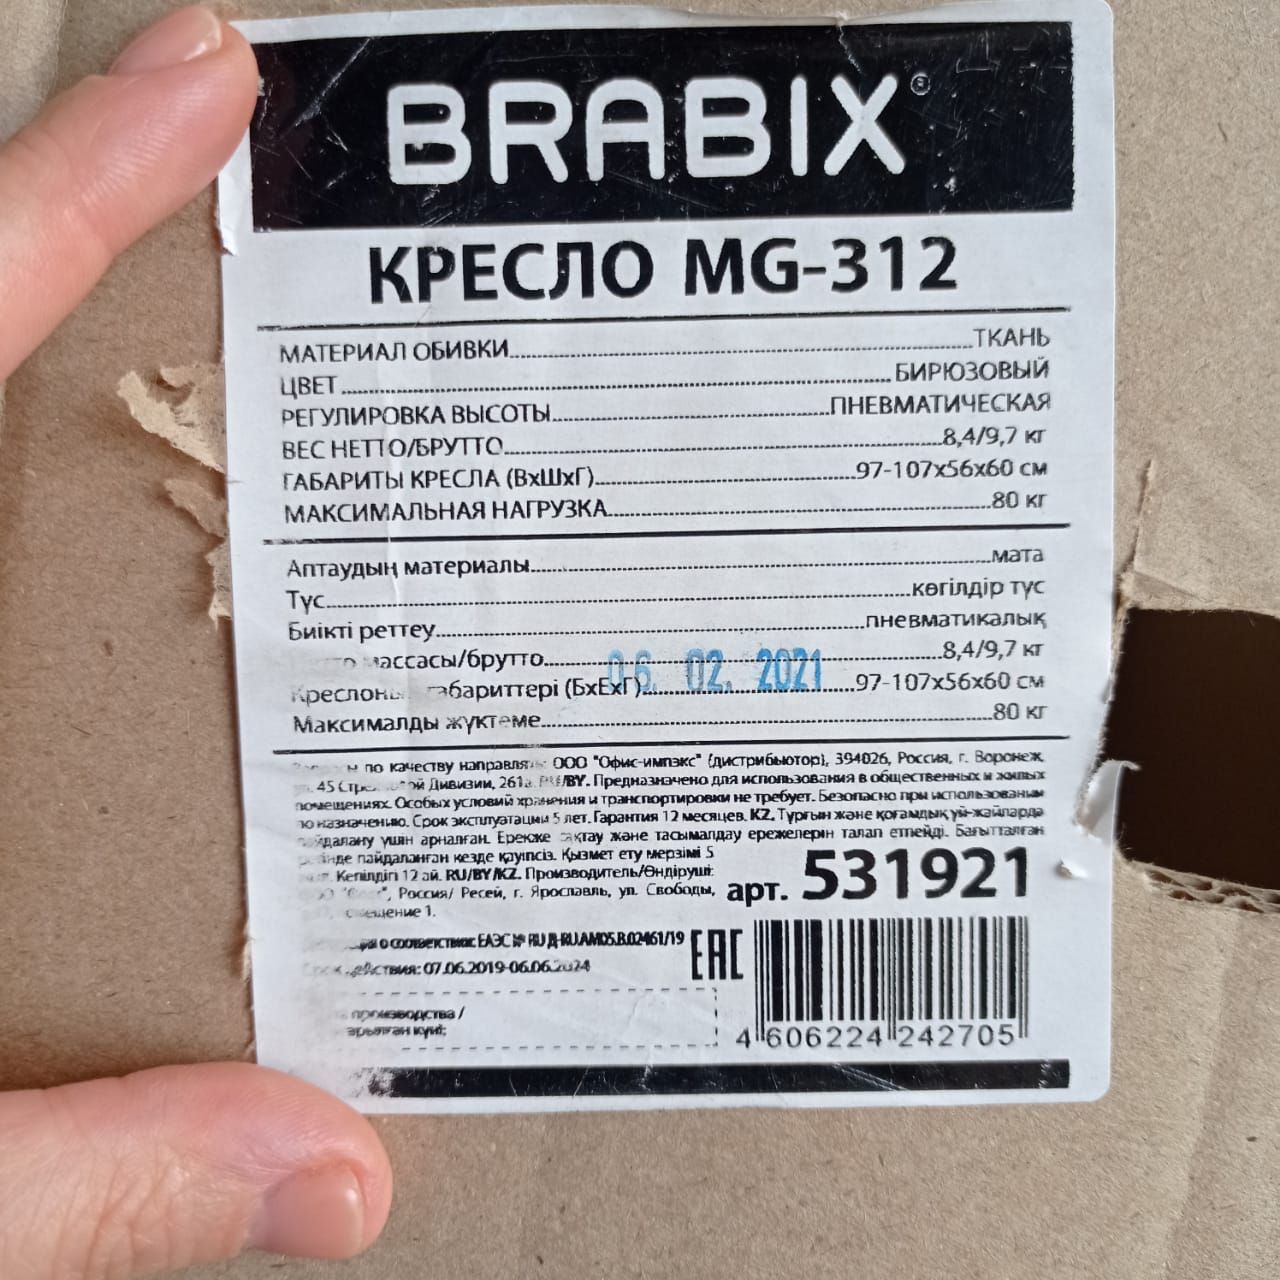 Brabix Prestige start MG-312 Teal